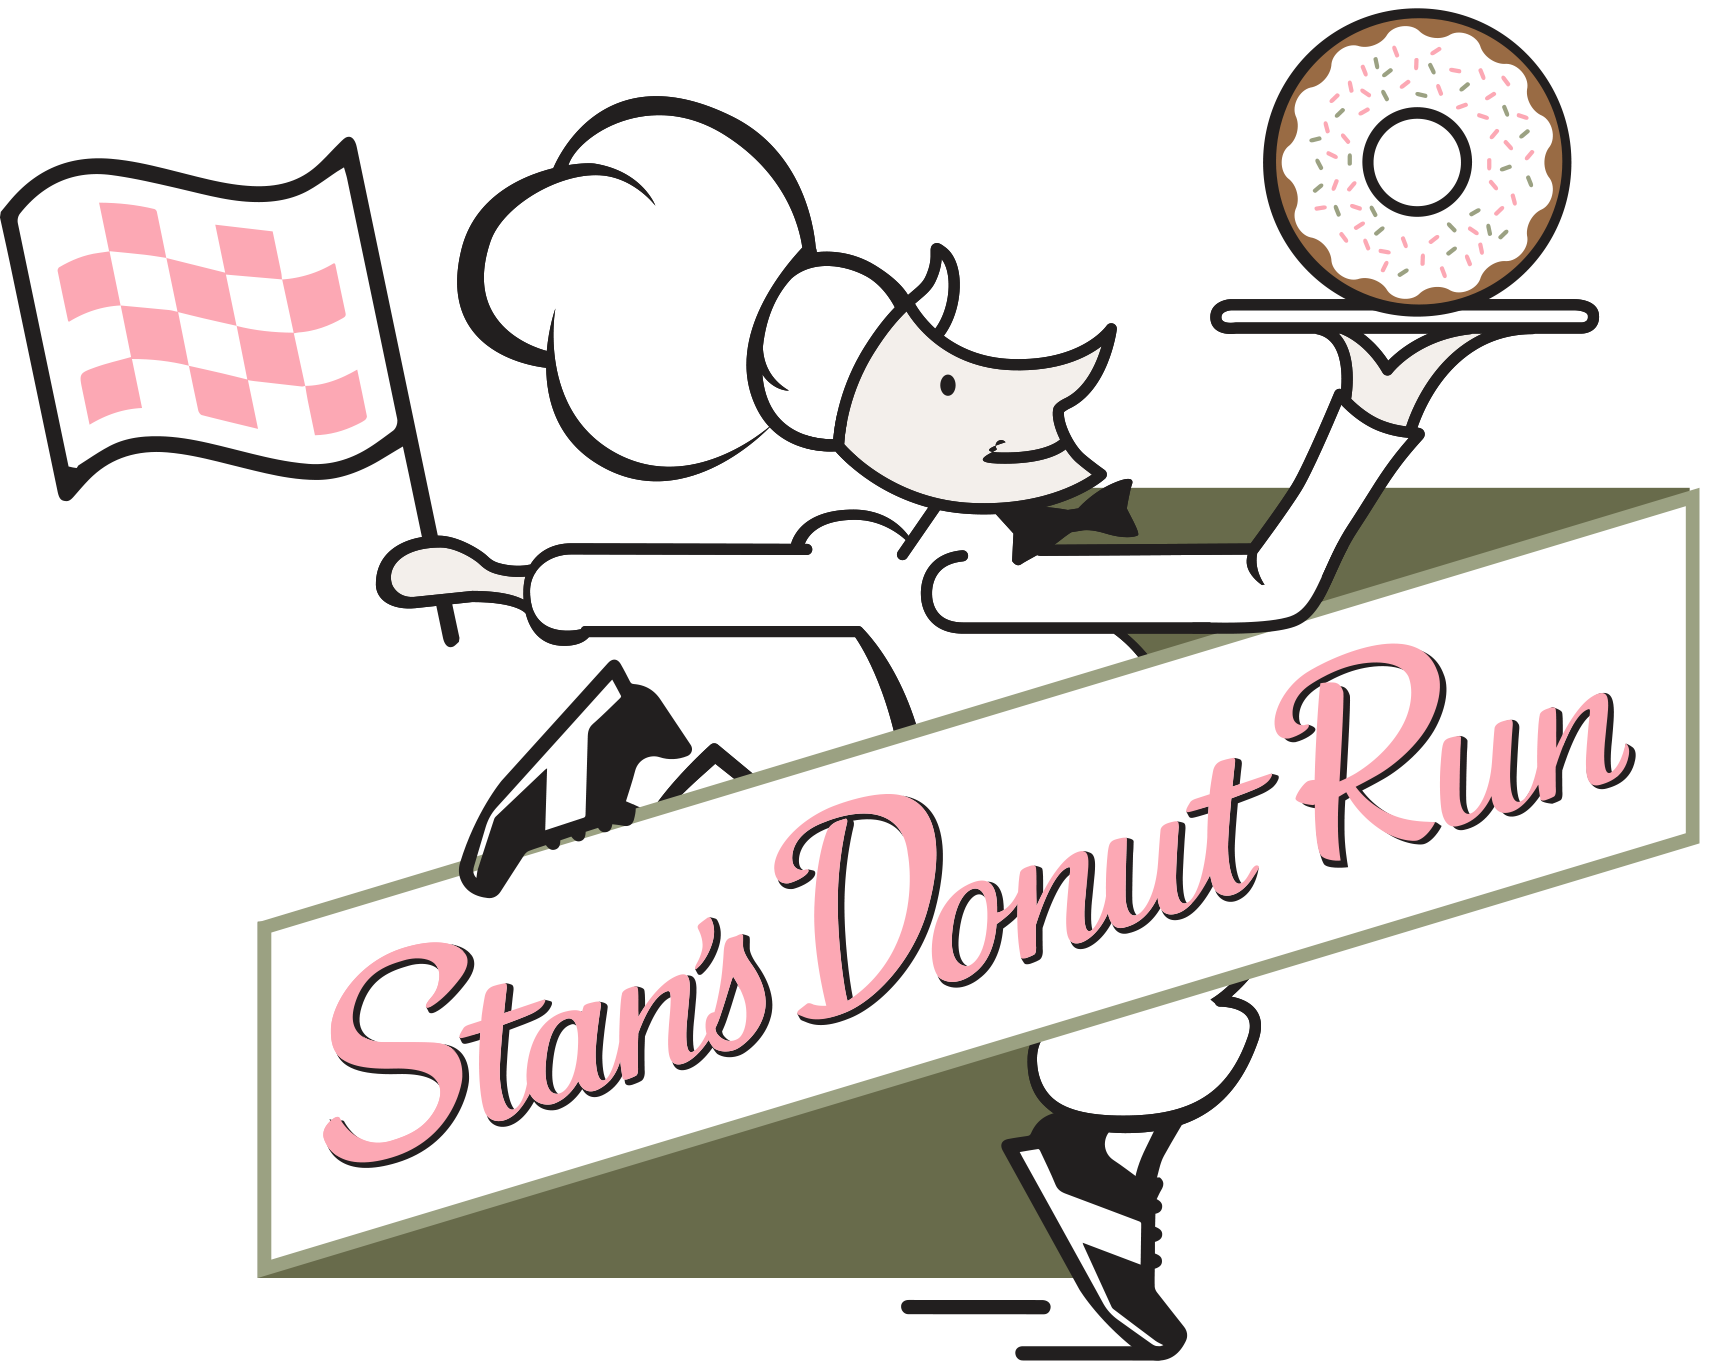 Stan's Donut 10K, 5K, & Kids Dash